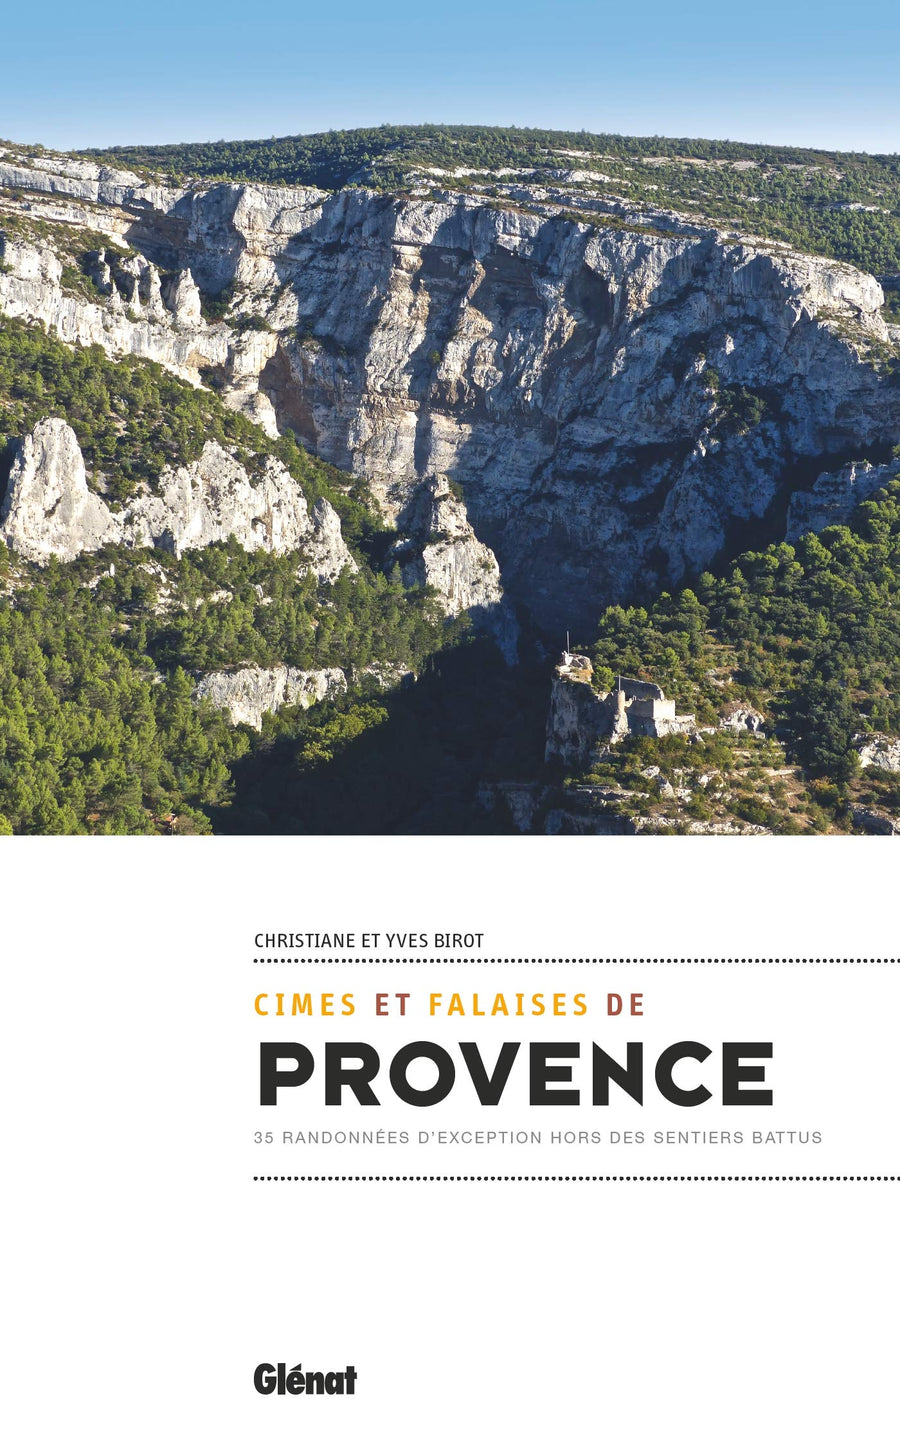 Guide - Cimes et falaises de Provence : 35 randonnées d'exception hors des sentiers battus | Glénat guide de randonnée Glénat 